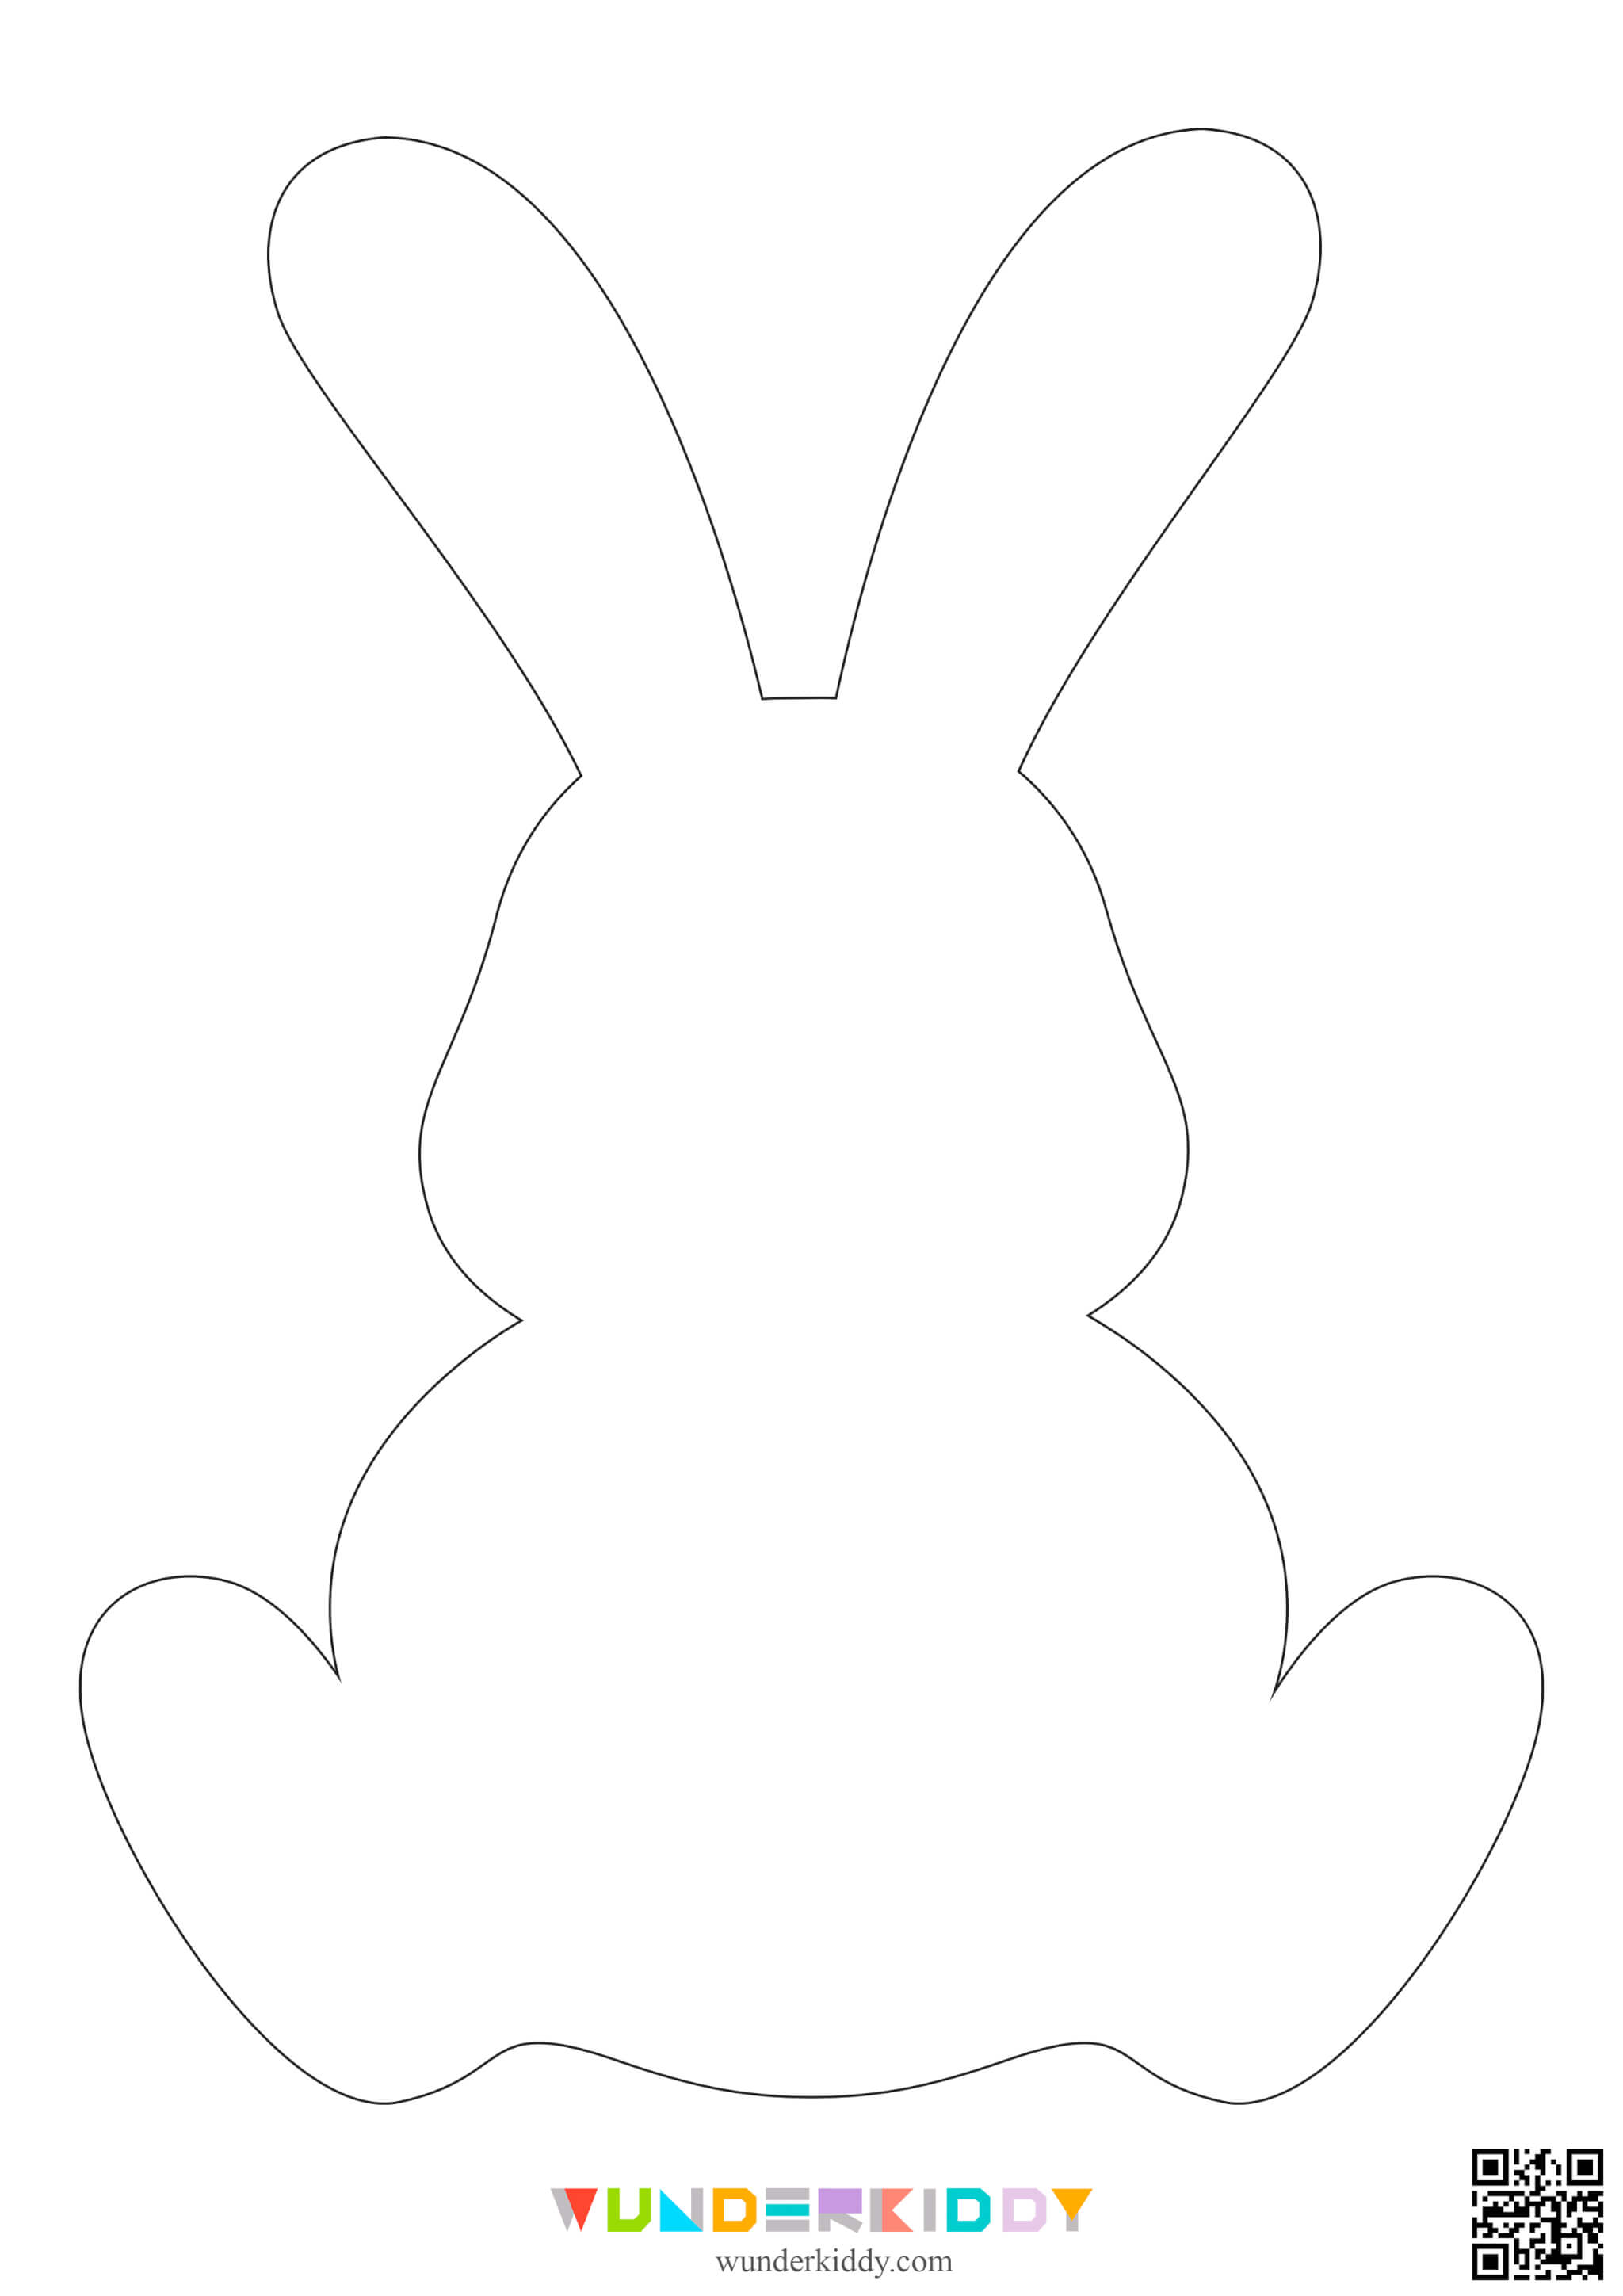 Printable Easter Bunny Template - Image 2